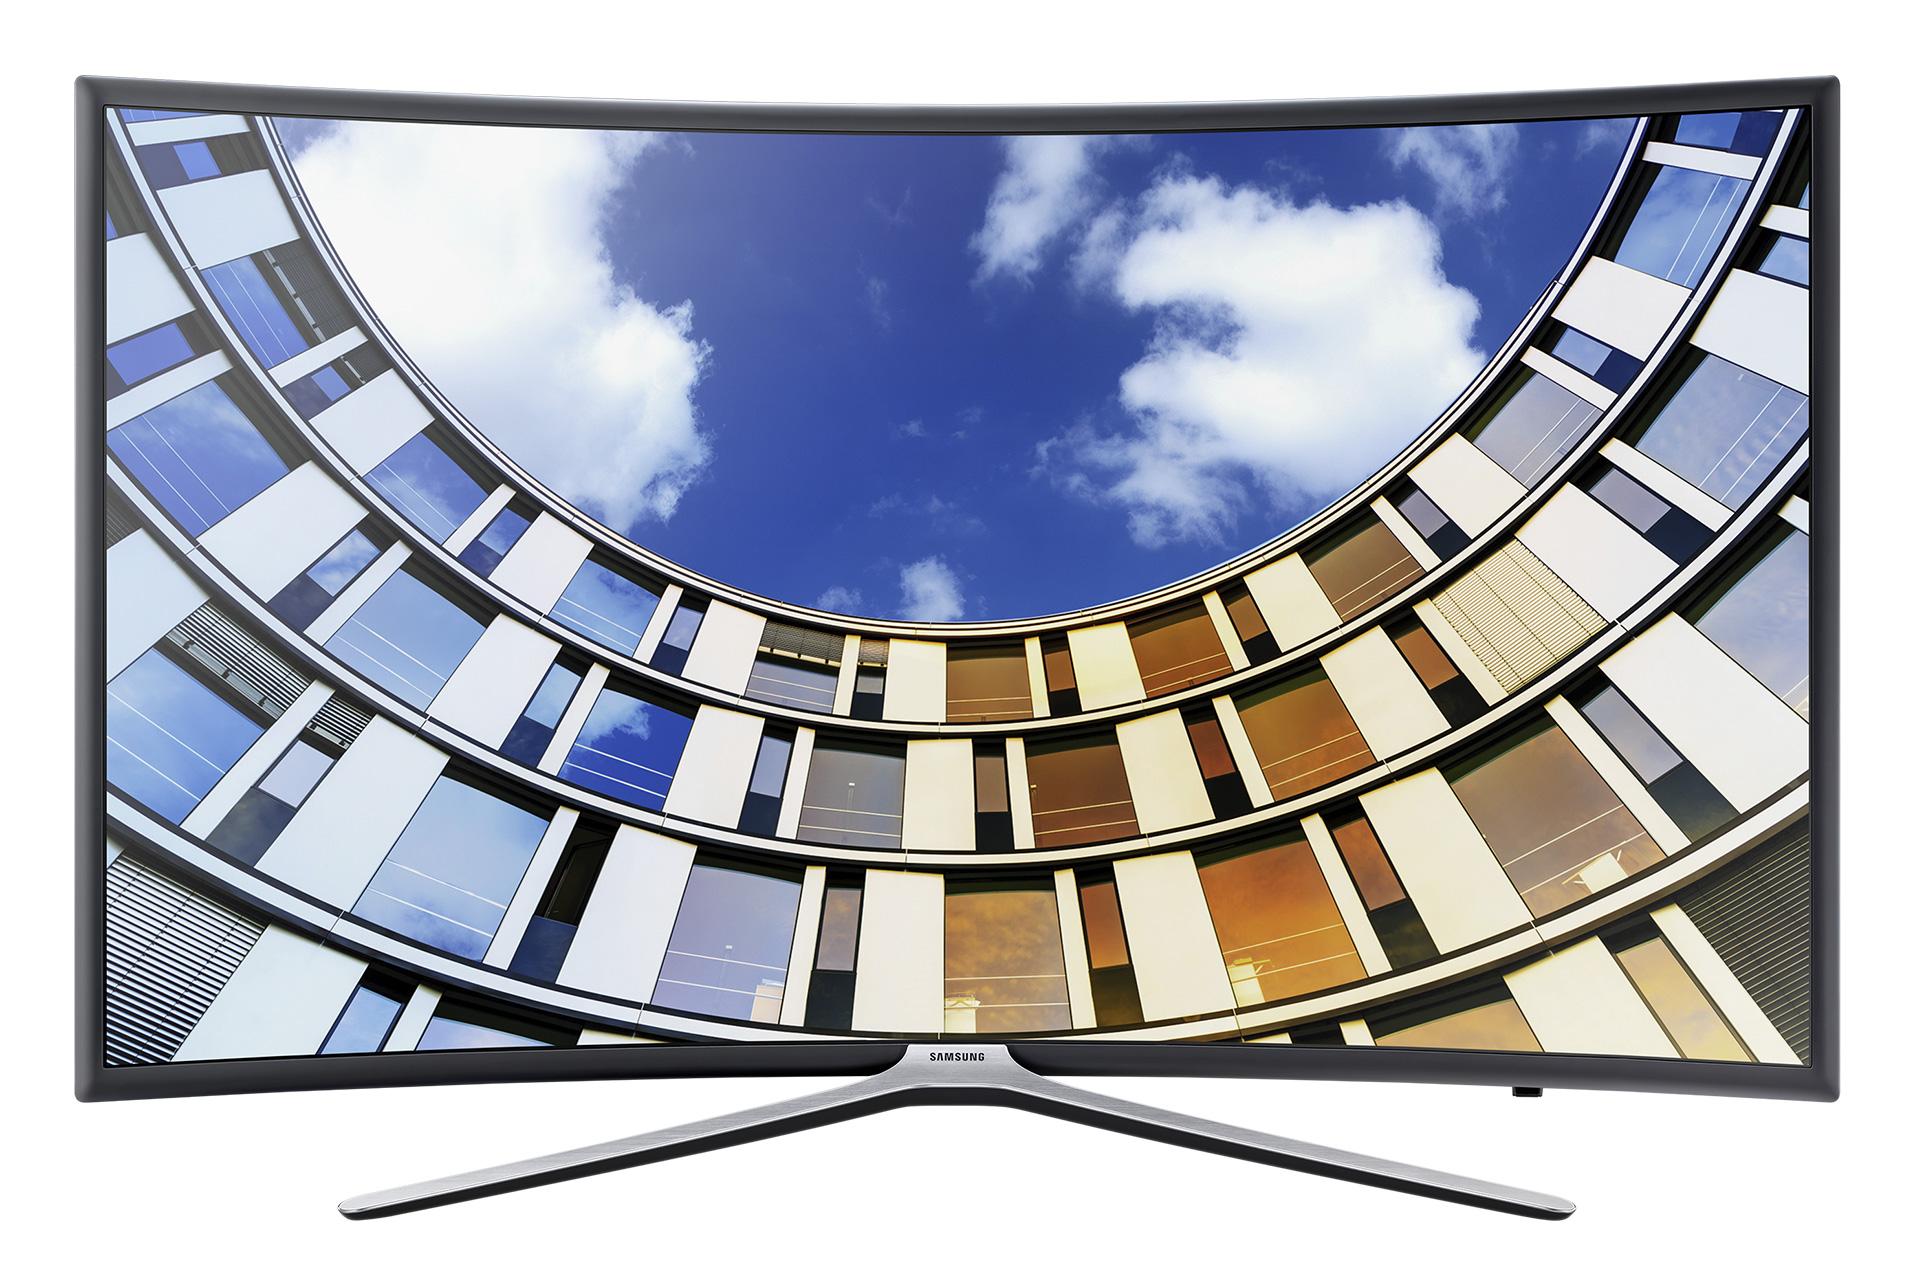 نمای جلو تلویزیون M6500 مدل 49 اینچ با صفحه روشن